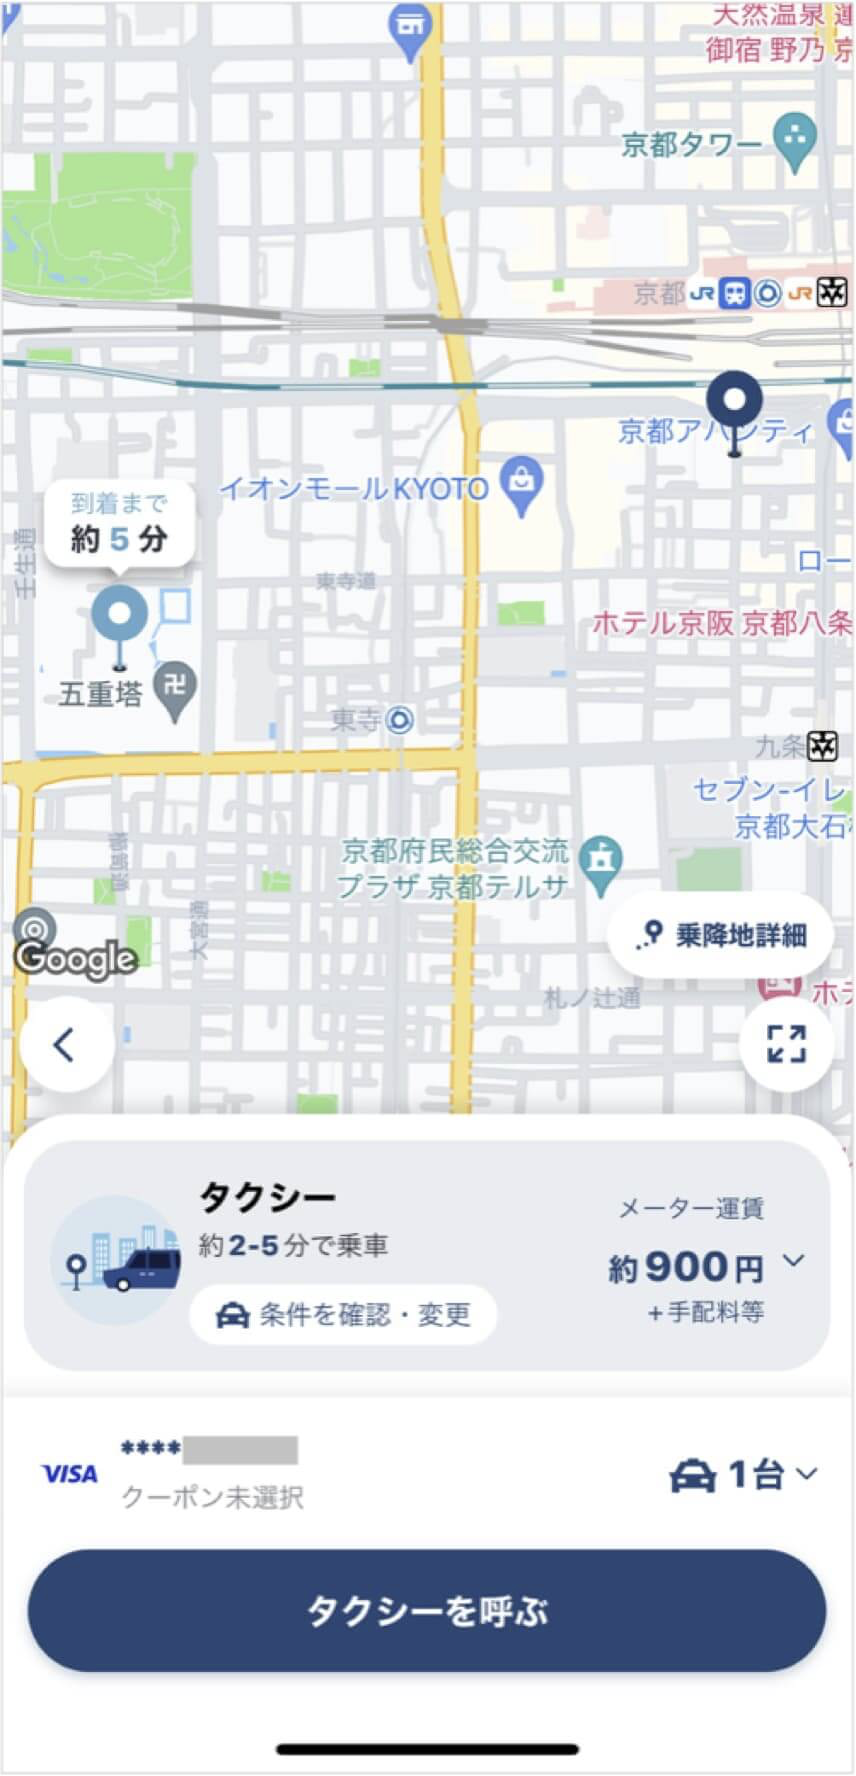 京都駅から東寺までのタクシー料金・所要時間まとめ